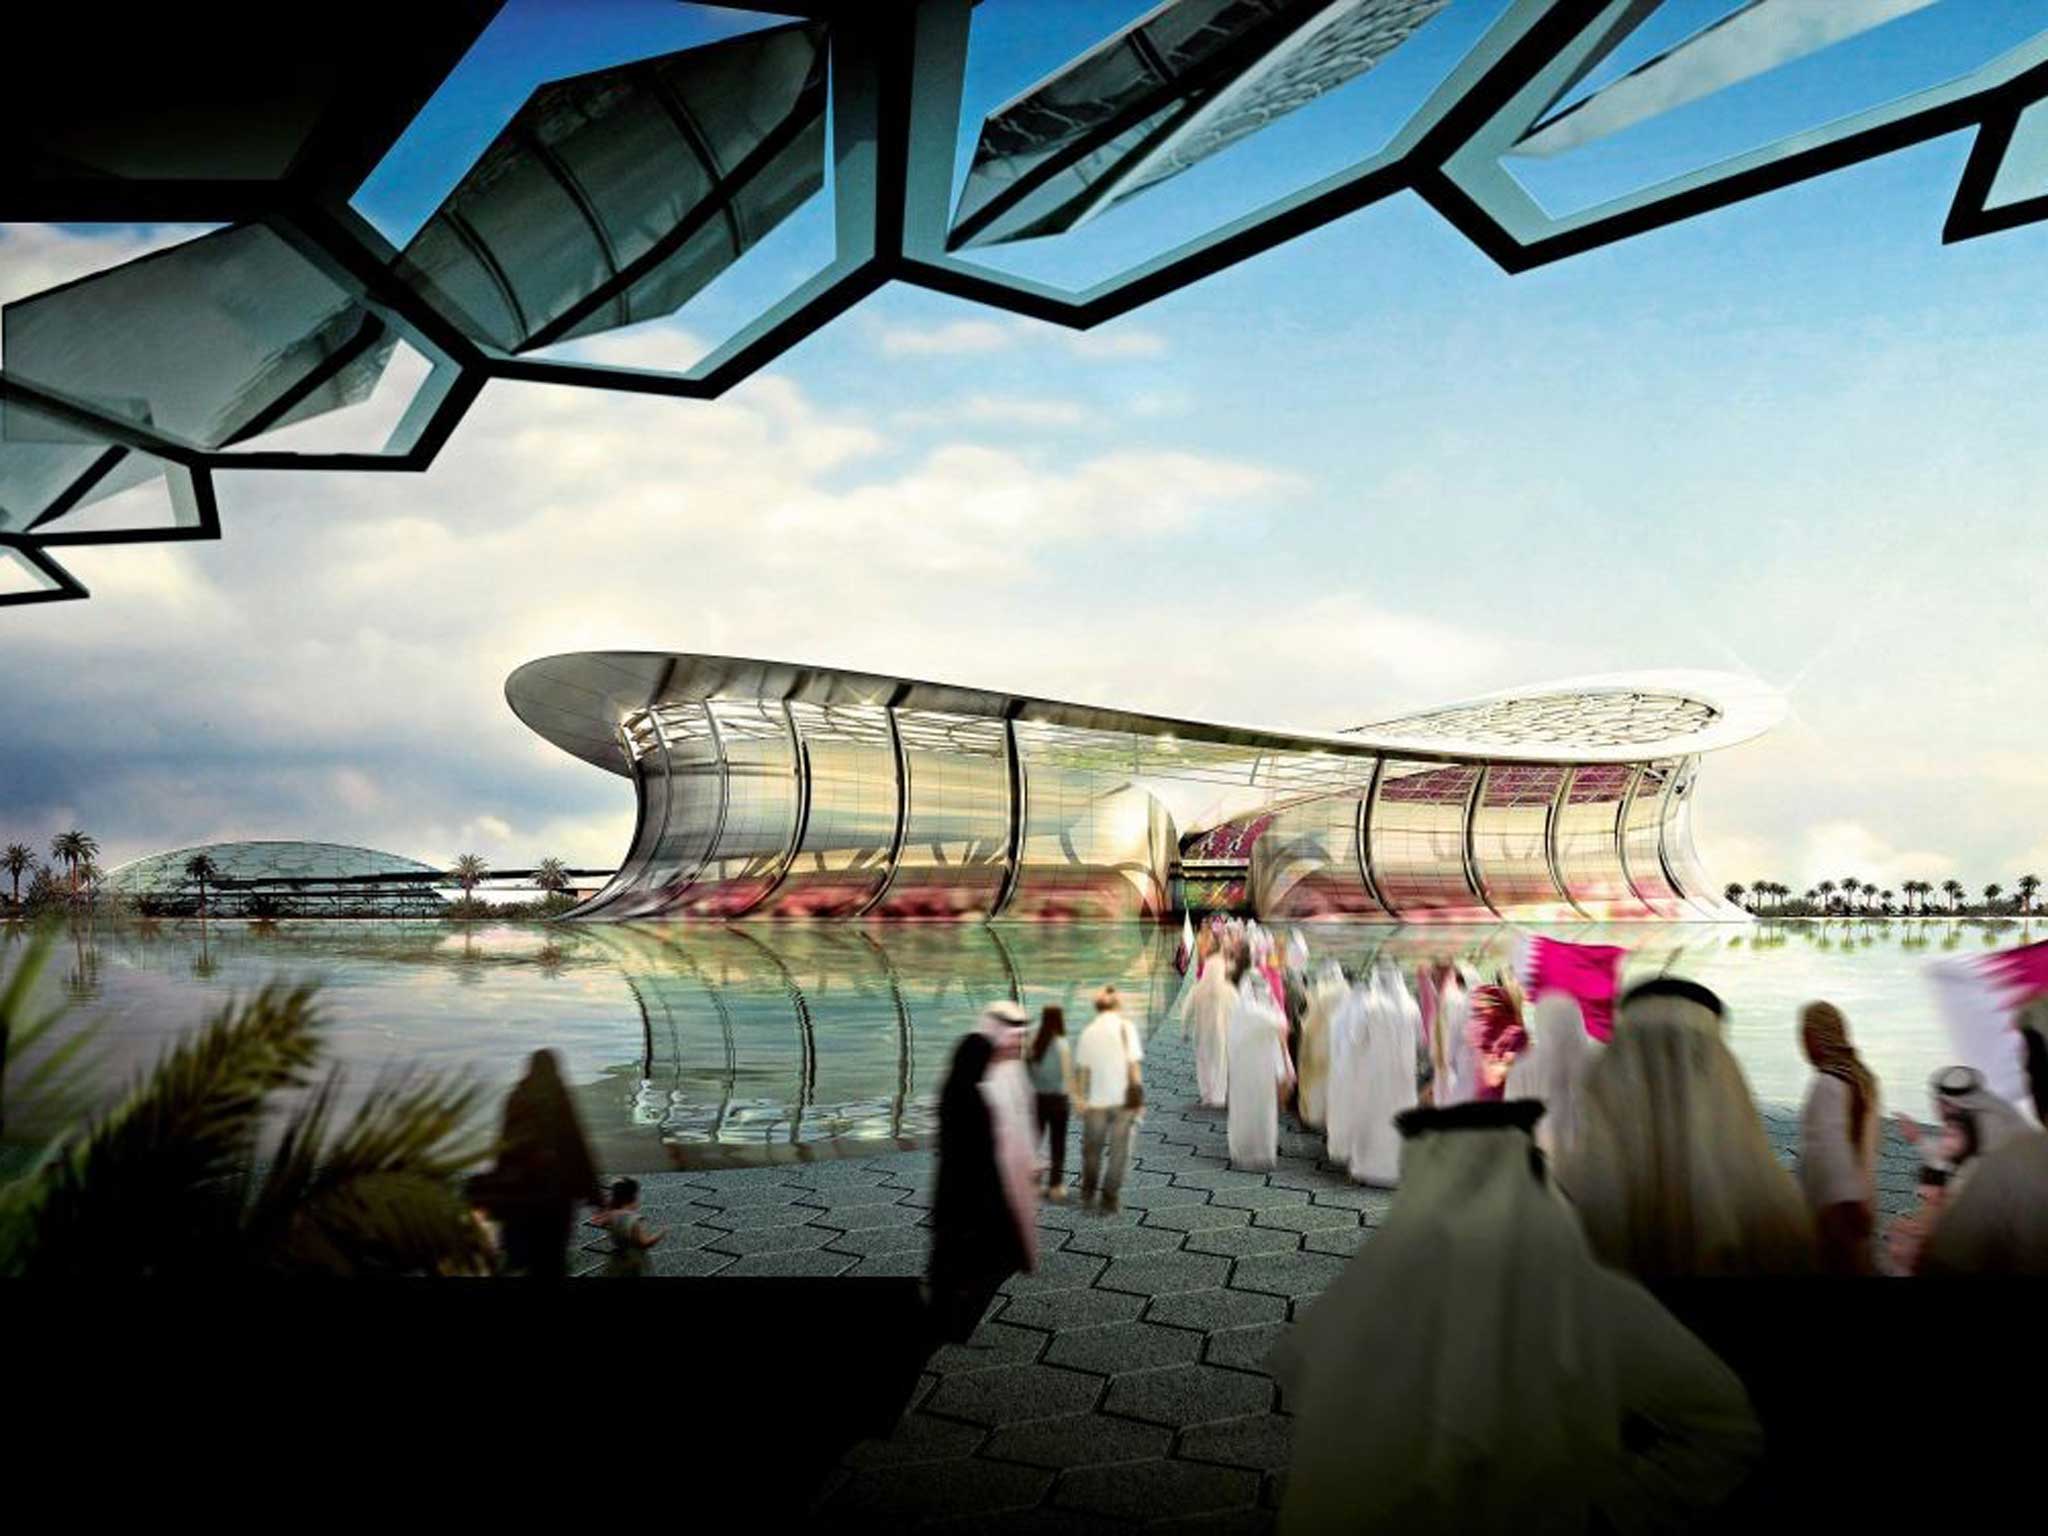 Qatar’s proposed stadium